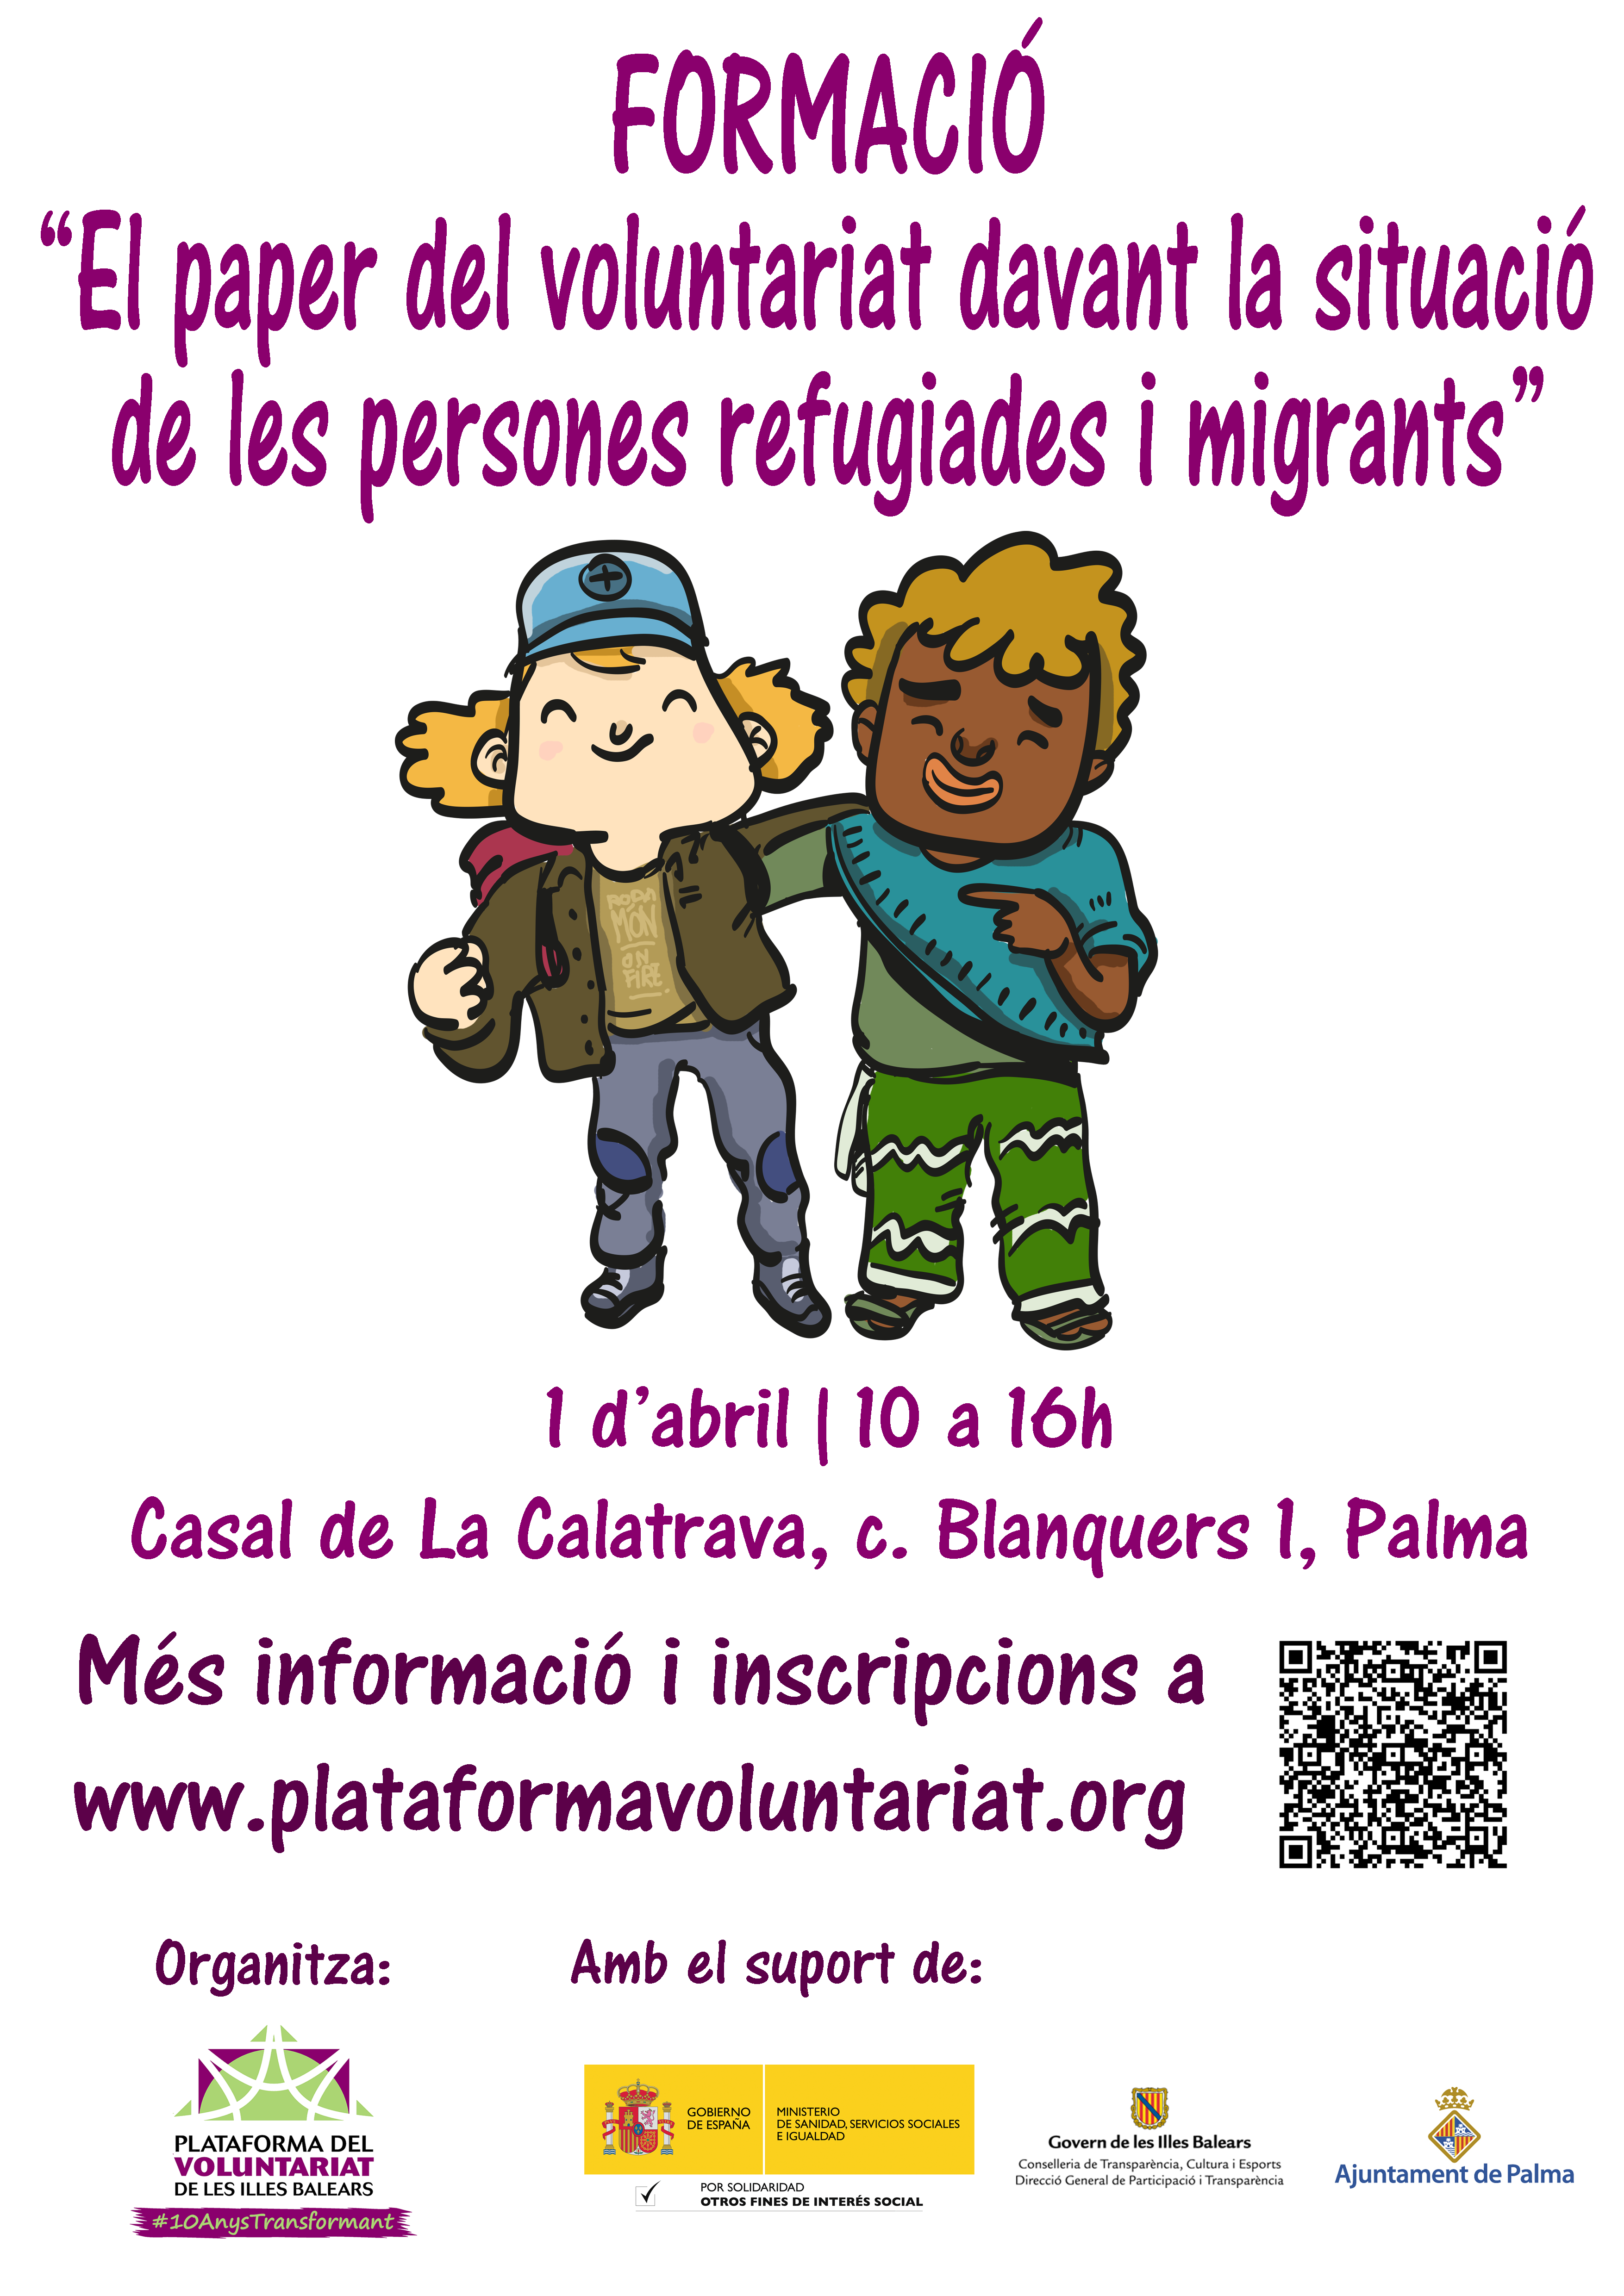 Formación Específica “El papel del voluntariado ante la situación de las personas refugiadas y migrantes”